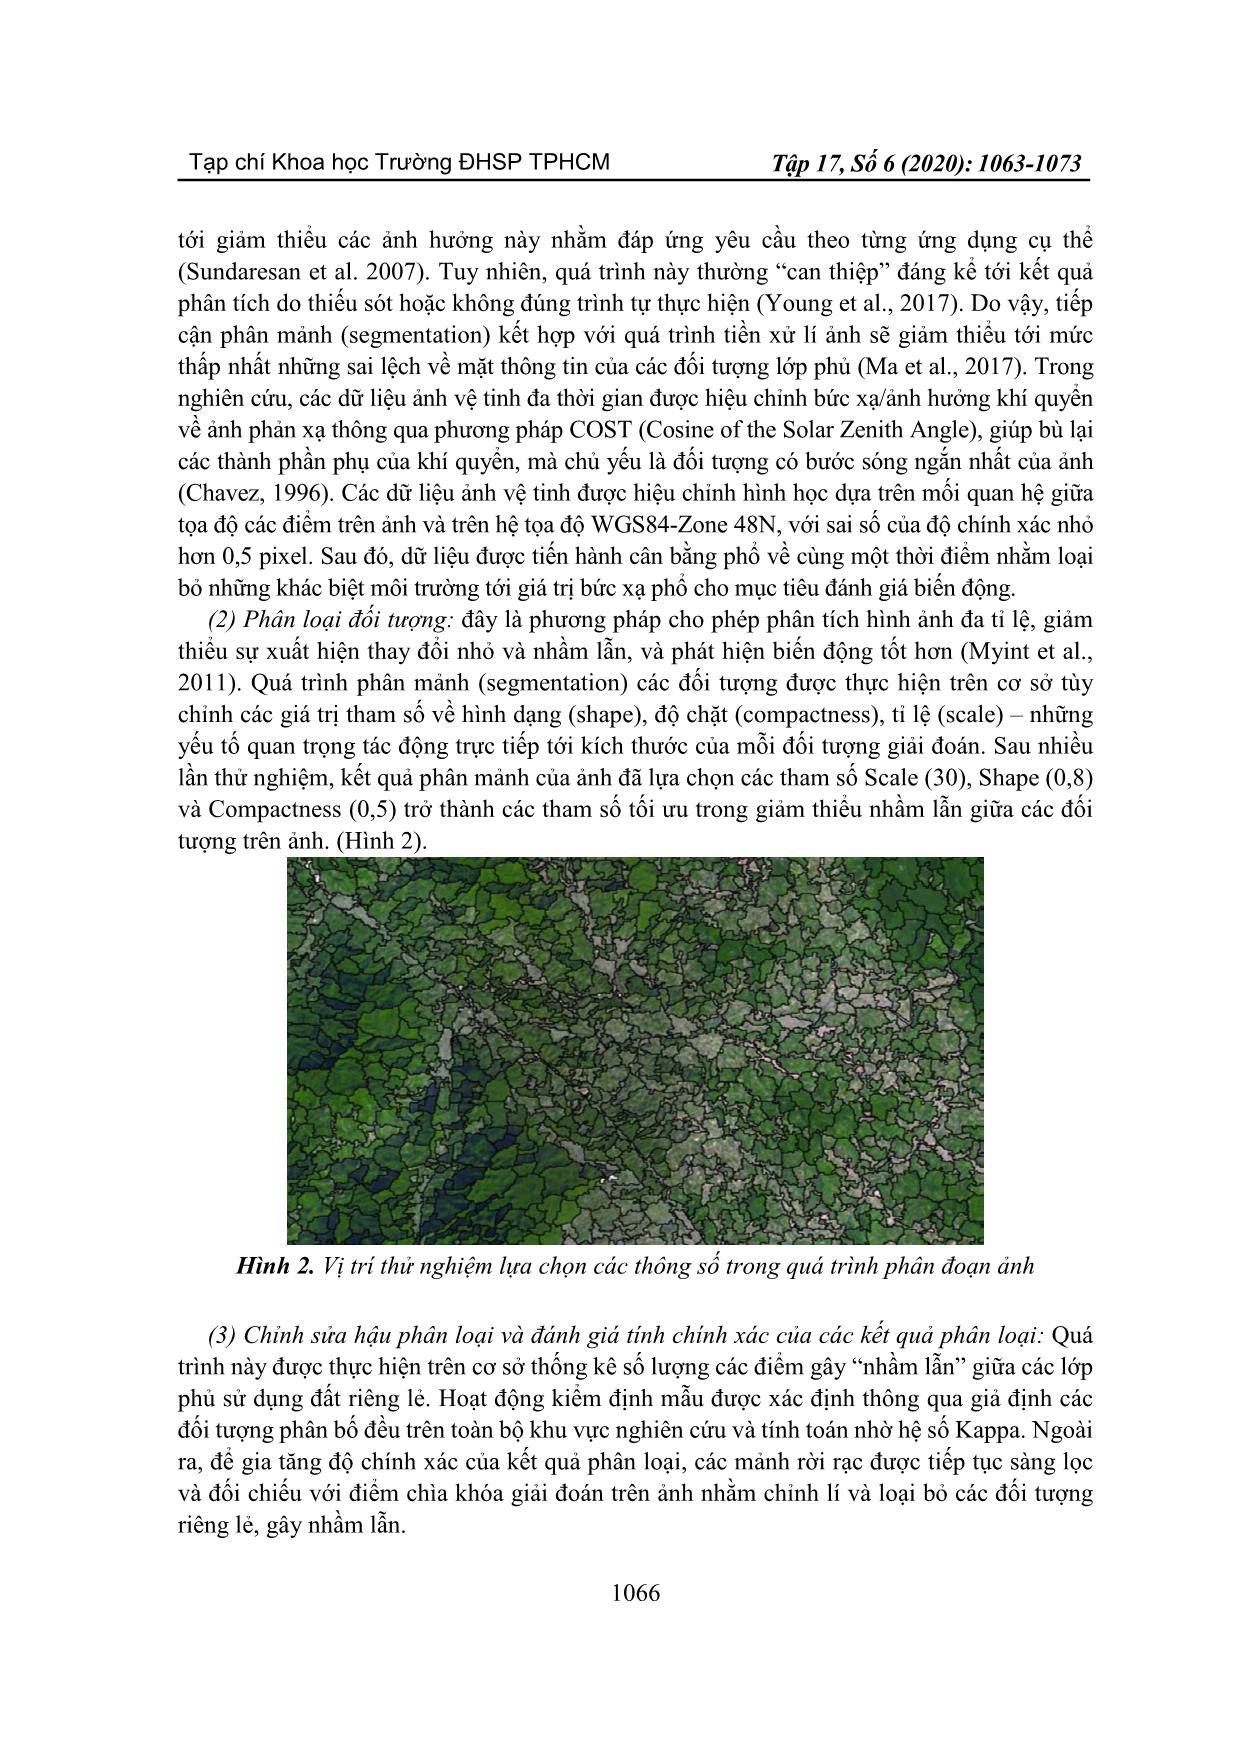 Ứng dụng viễn thám và độ đo cảnh quan trong phân tích xu thế biến động sử dụng đất khu vực huyện Văn Chấn, tỉnh Yên Bái giai đoạn 2008-2017 trang 4